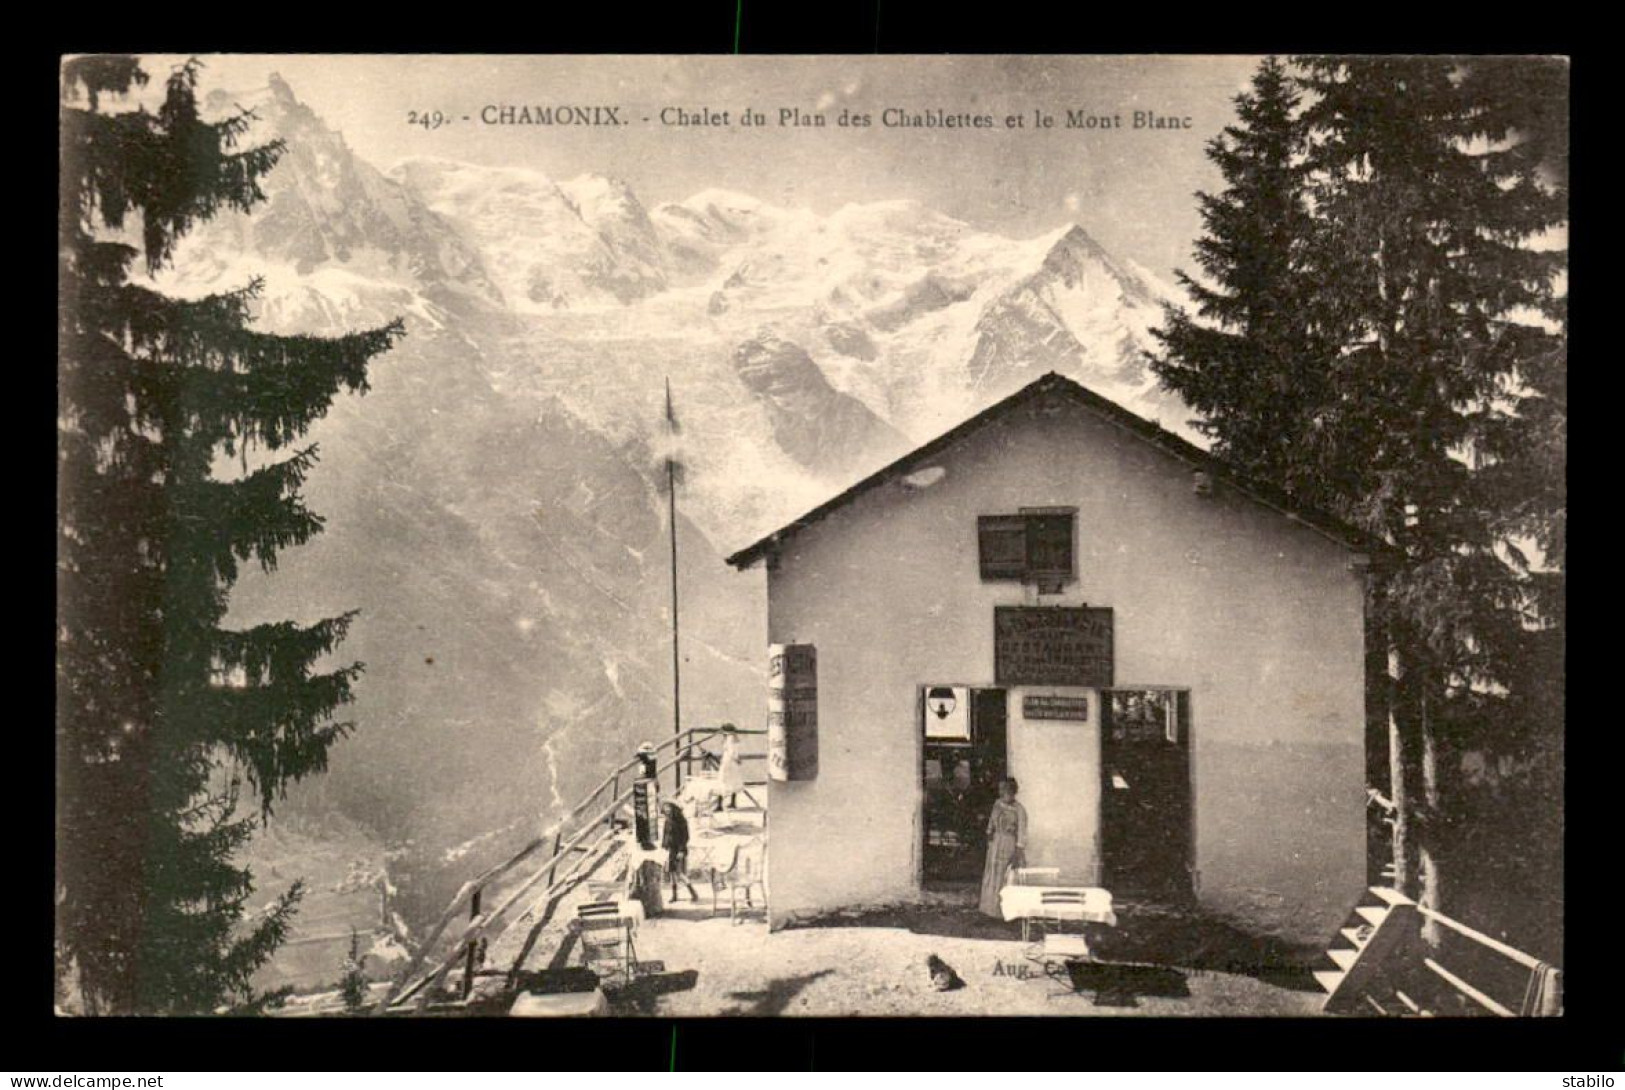 74 - CHAMONIX - CHALET DU PLAN DES CHABLETTES ET LE MONT-BLANC - Chamonix-Mont-Blanc